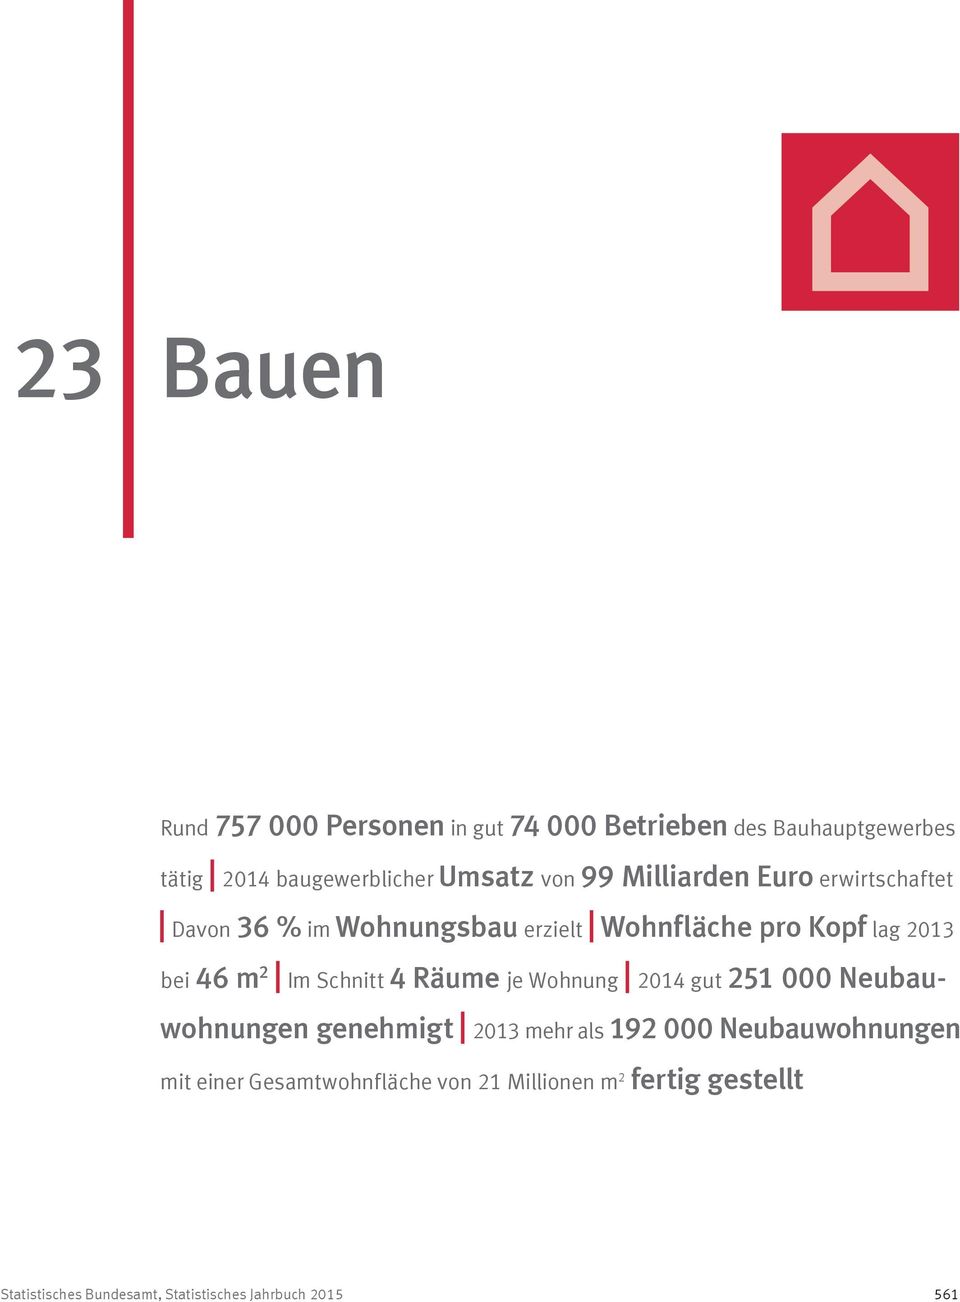 Schnitt 4 Räume je Wohnung 2014 gut 251 000 Neubauwohnungen genehmigt 2013 mehr als 192 000 Neubauwohnungen